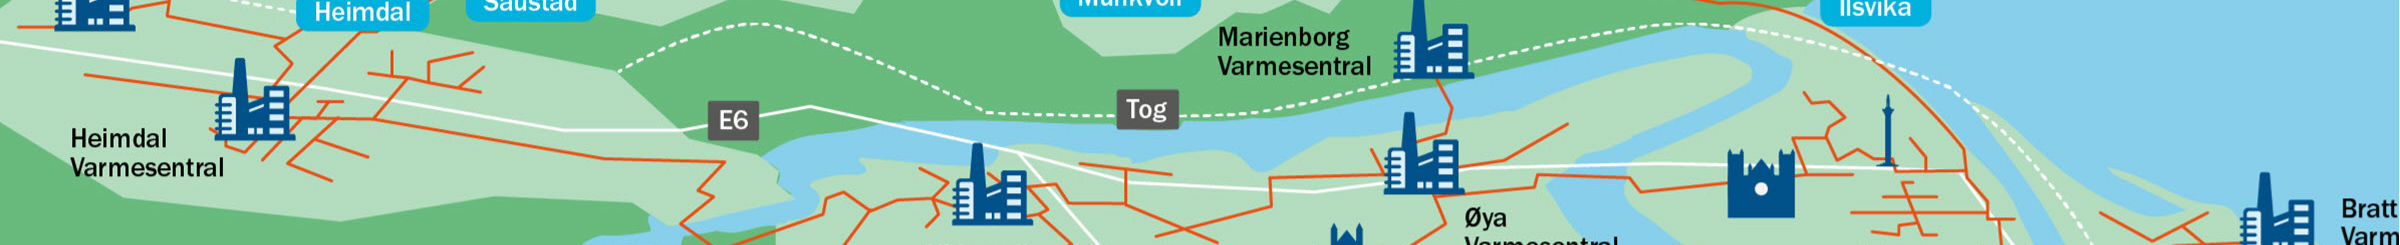 Trondheimskart